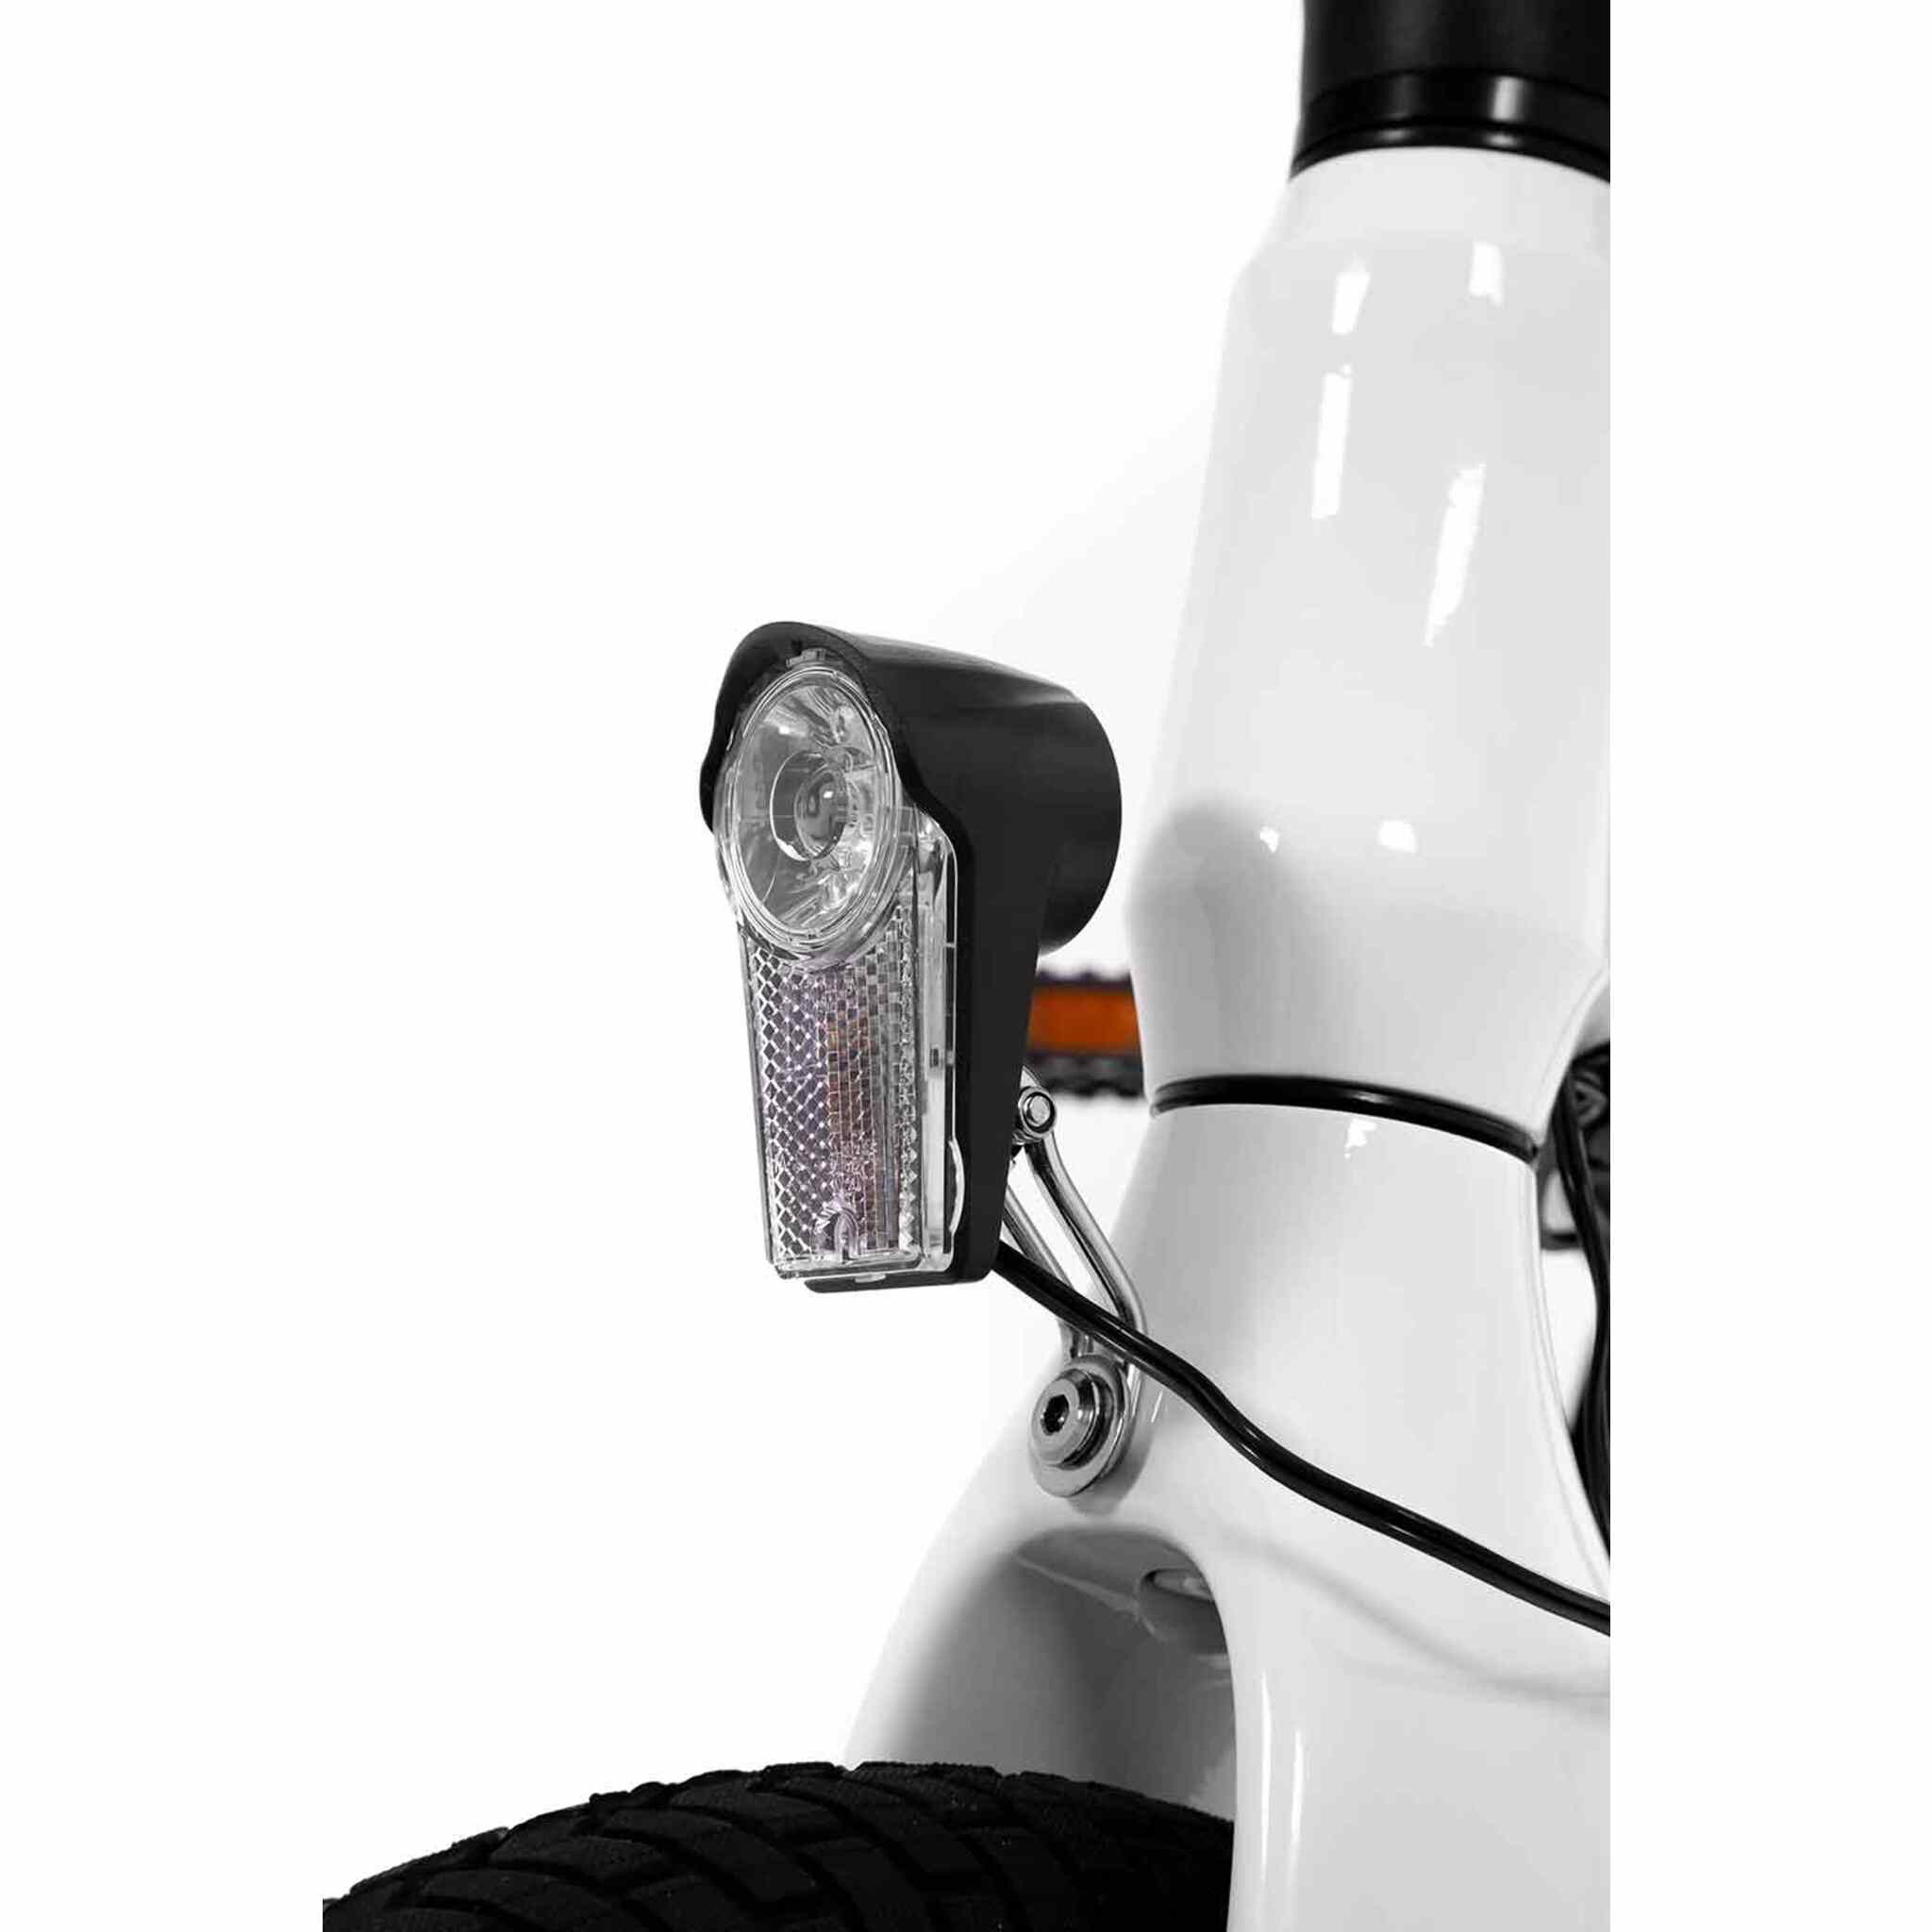 SXT Velox - elektrisches Faltrad für die urbane Mobilität - MabeaMobility